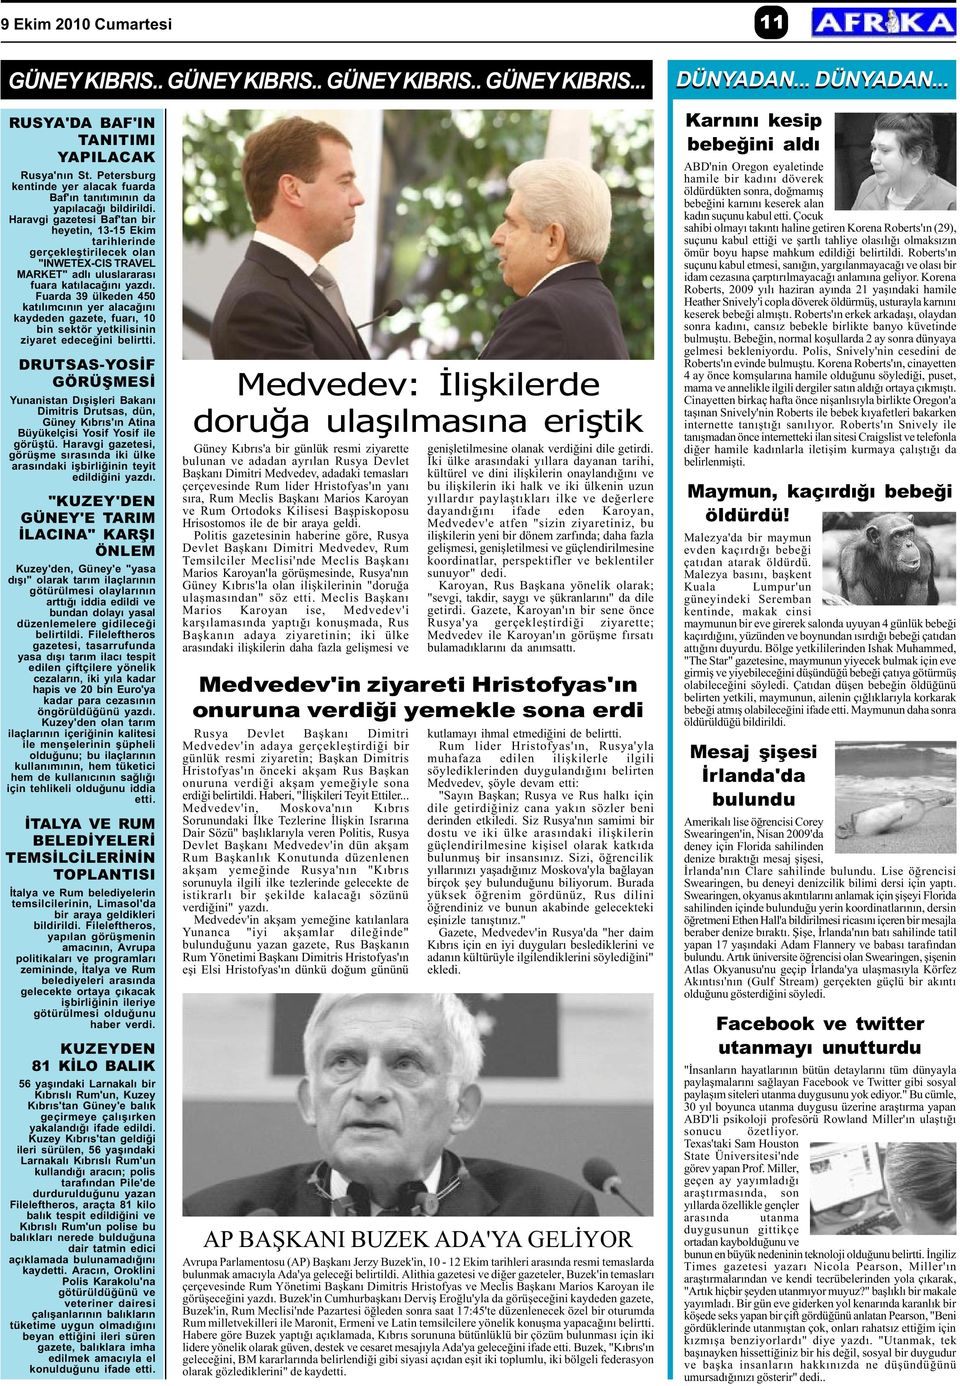 Haravgi gazetesi Baf'tan bir heyetin, 13-15 Ekim tarihlerinde gerçekleþtirilecek olan "INWETEX-CIS TRAVEL MARKET" adlý uluslararasý fuara katýlacaðýný yazdý.